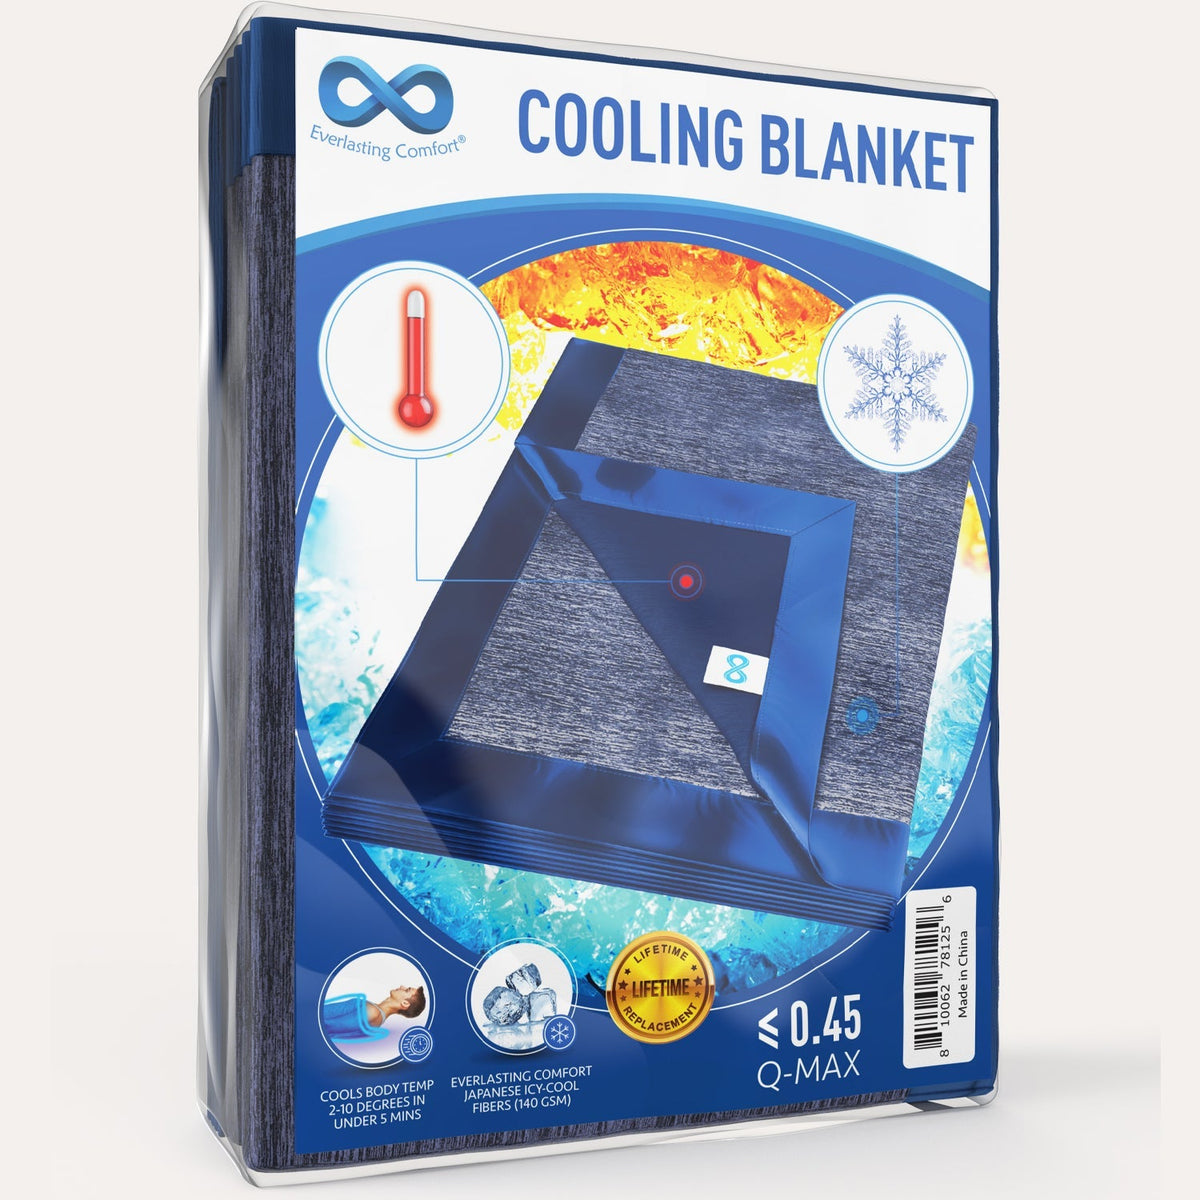 Cooling Blanket – Everlasting Comfort